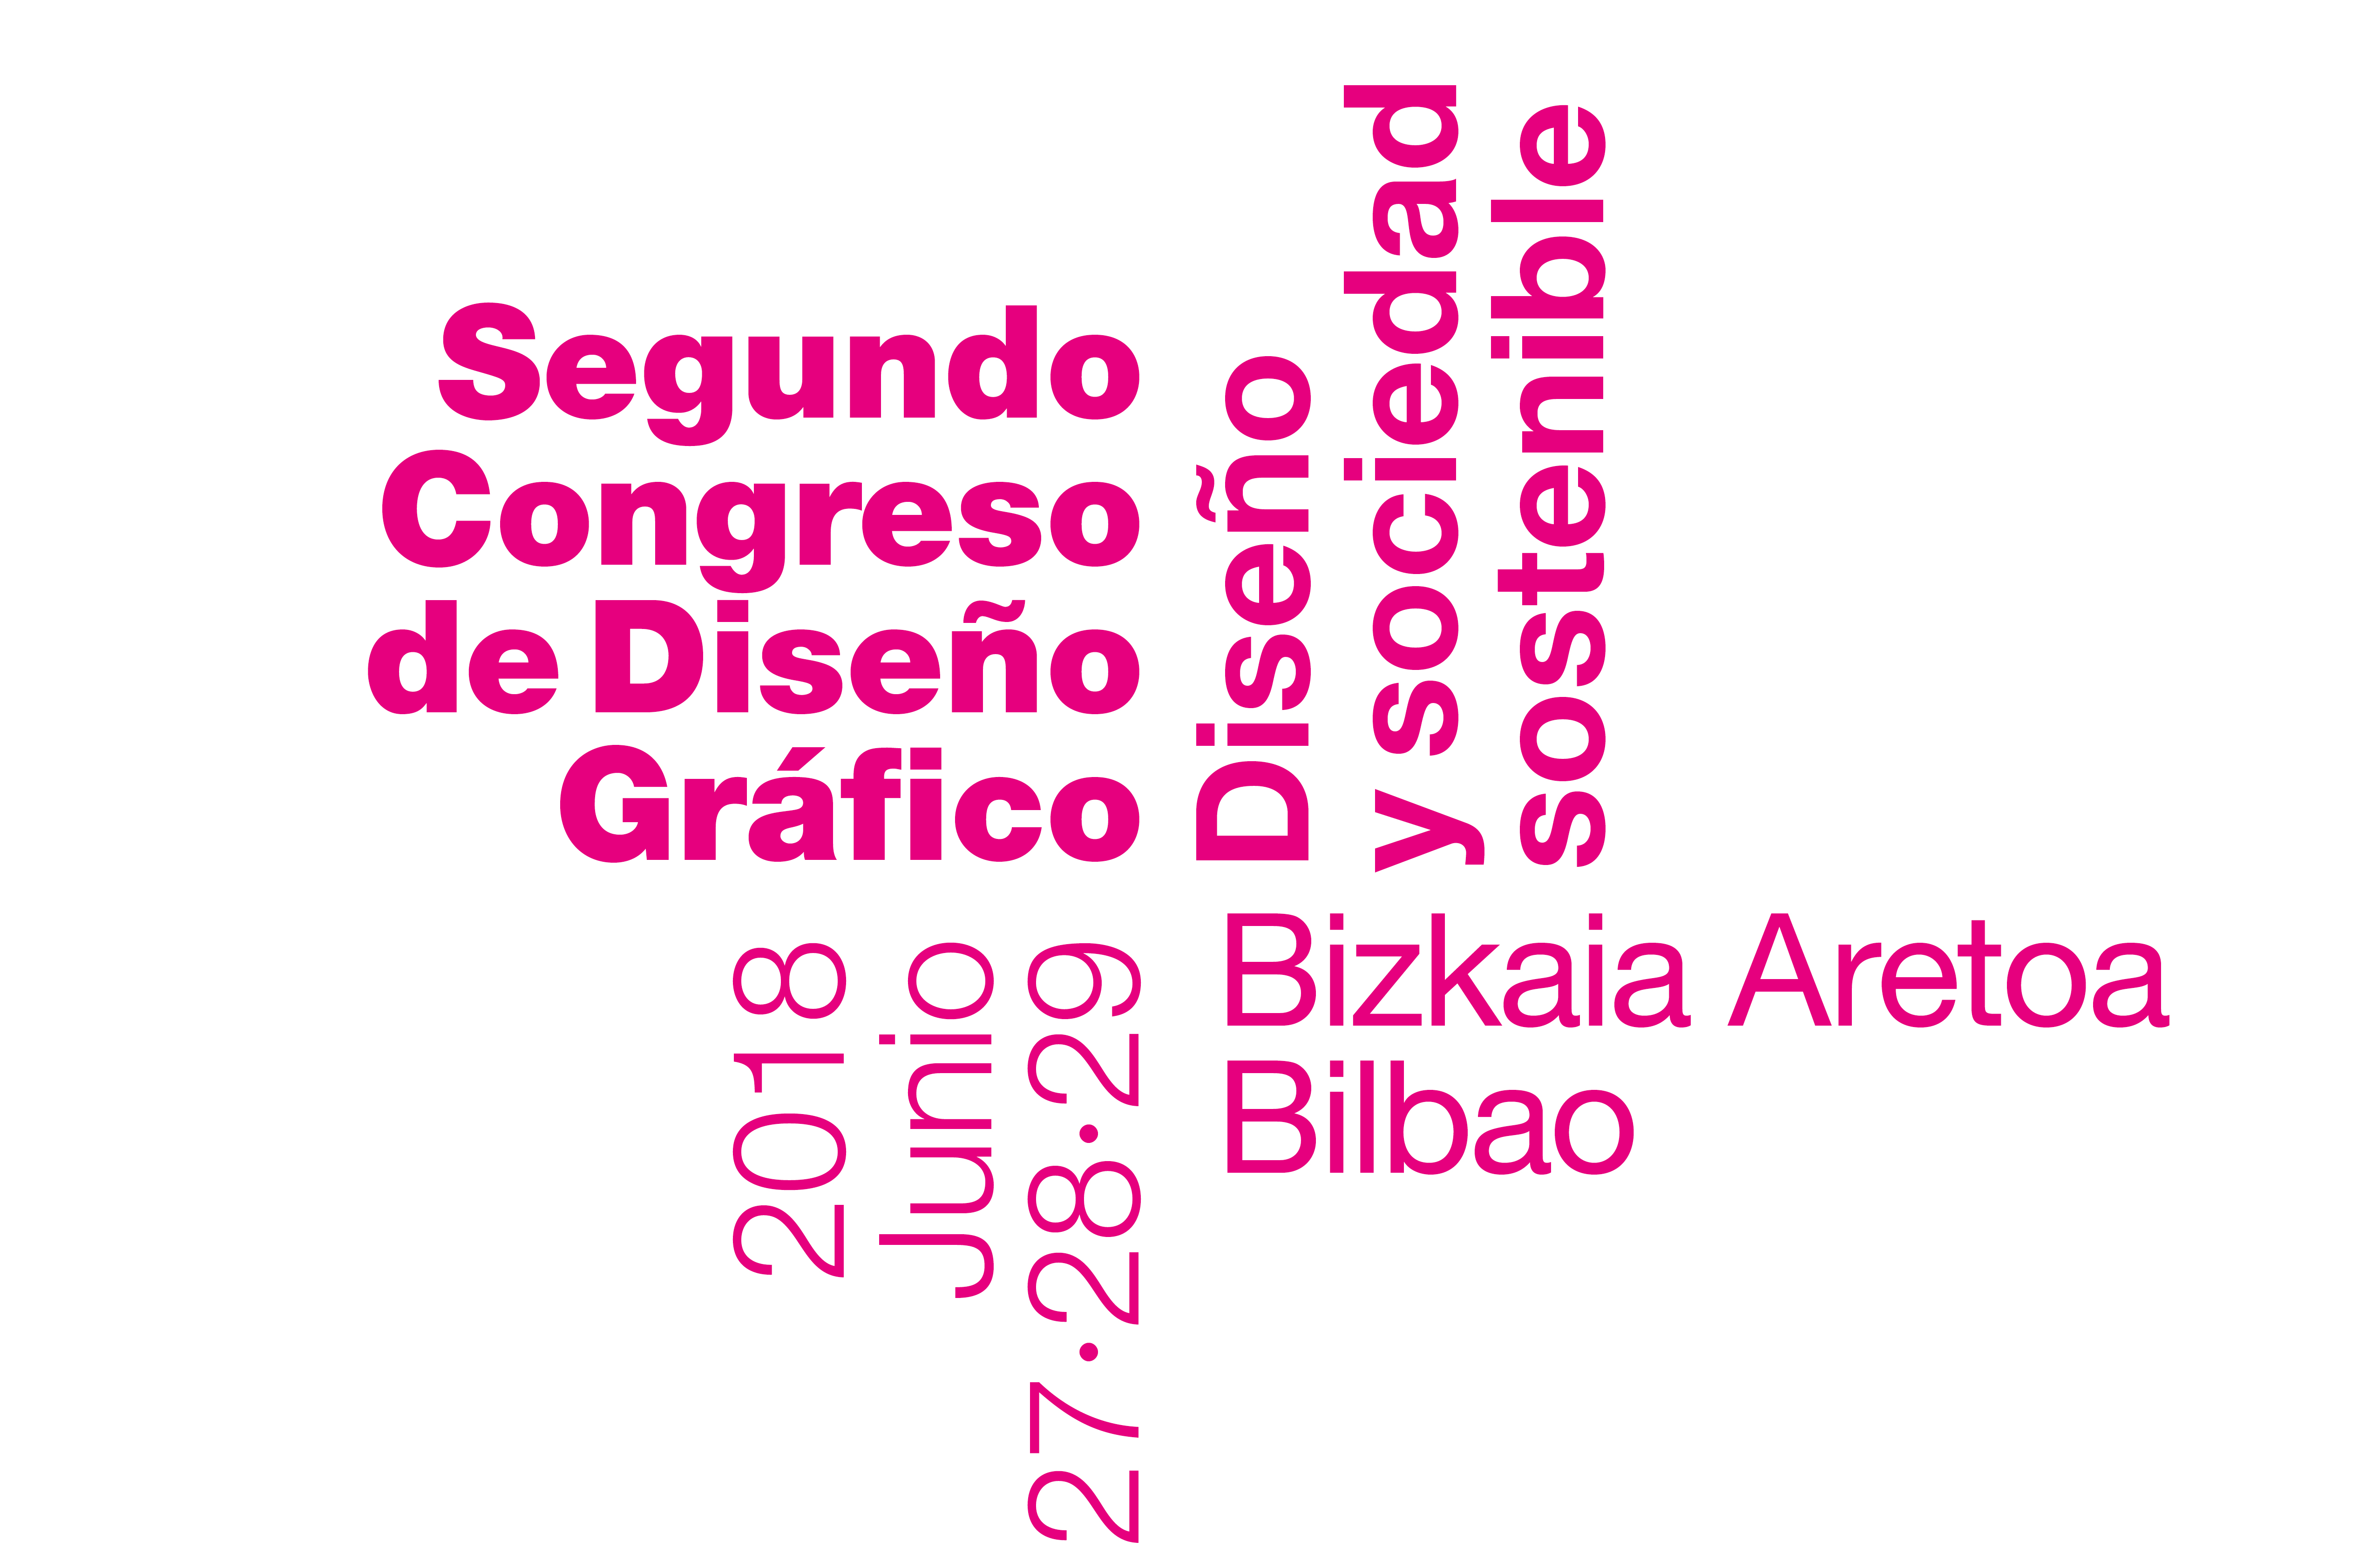 Segundo Congreso de Diseño Gráfico. Bilbao